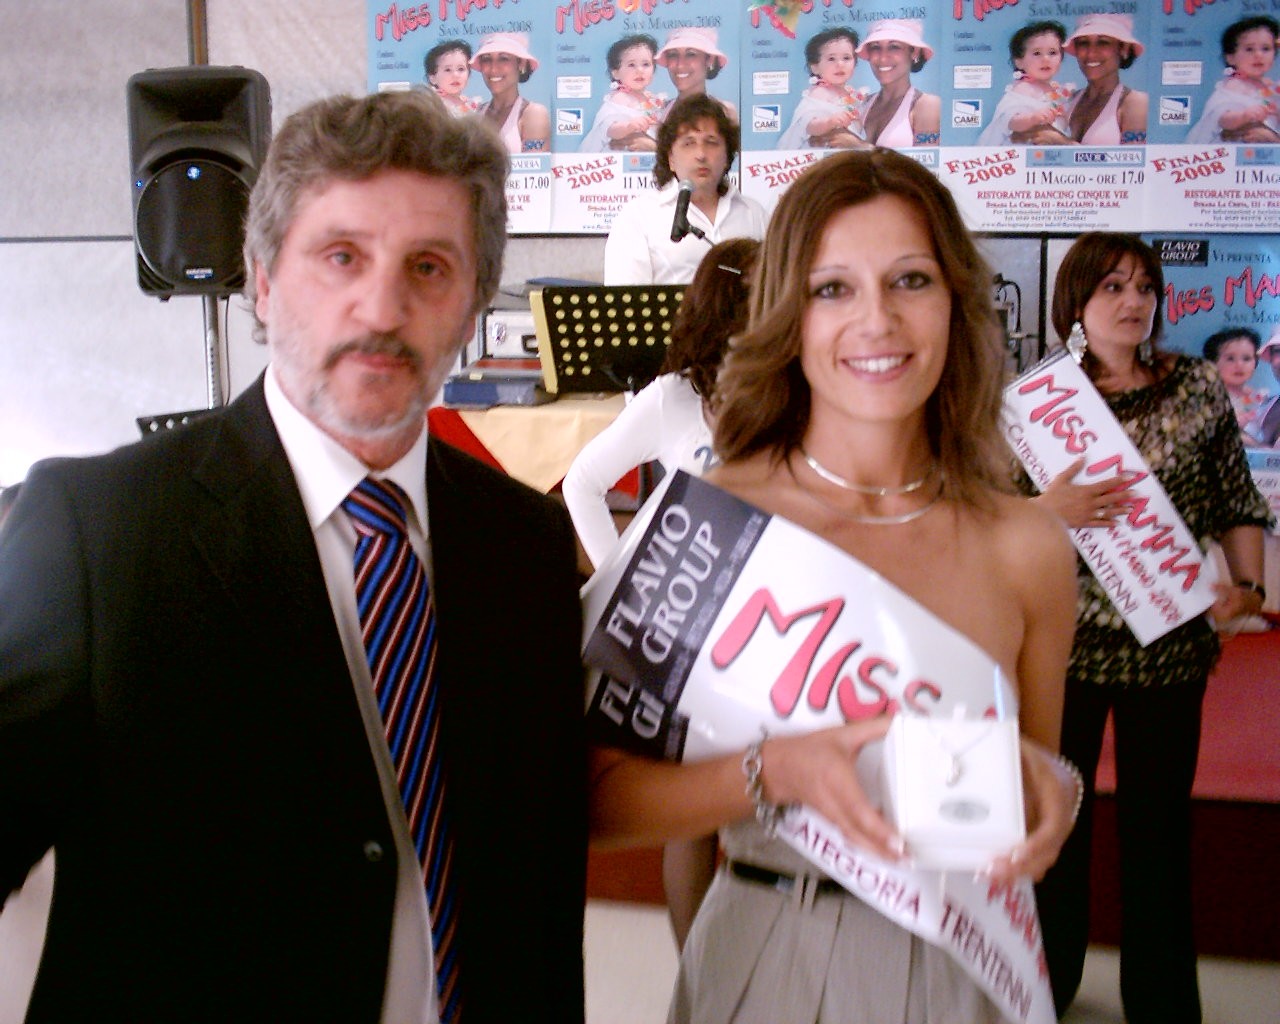  - Miss Mamma San Marino 2008 premiata da Flavio Albertini